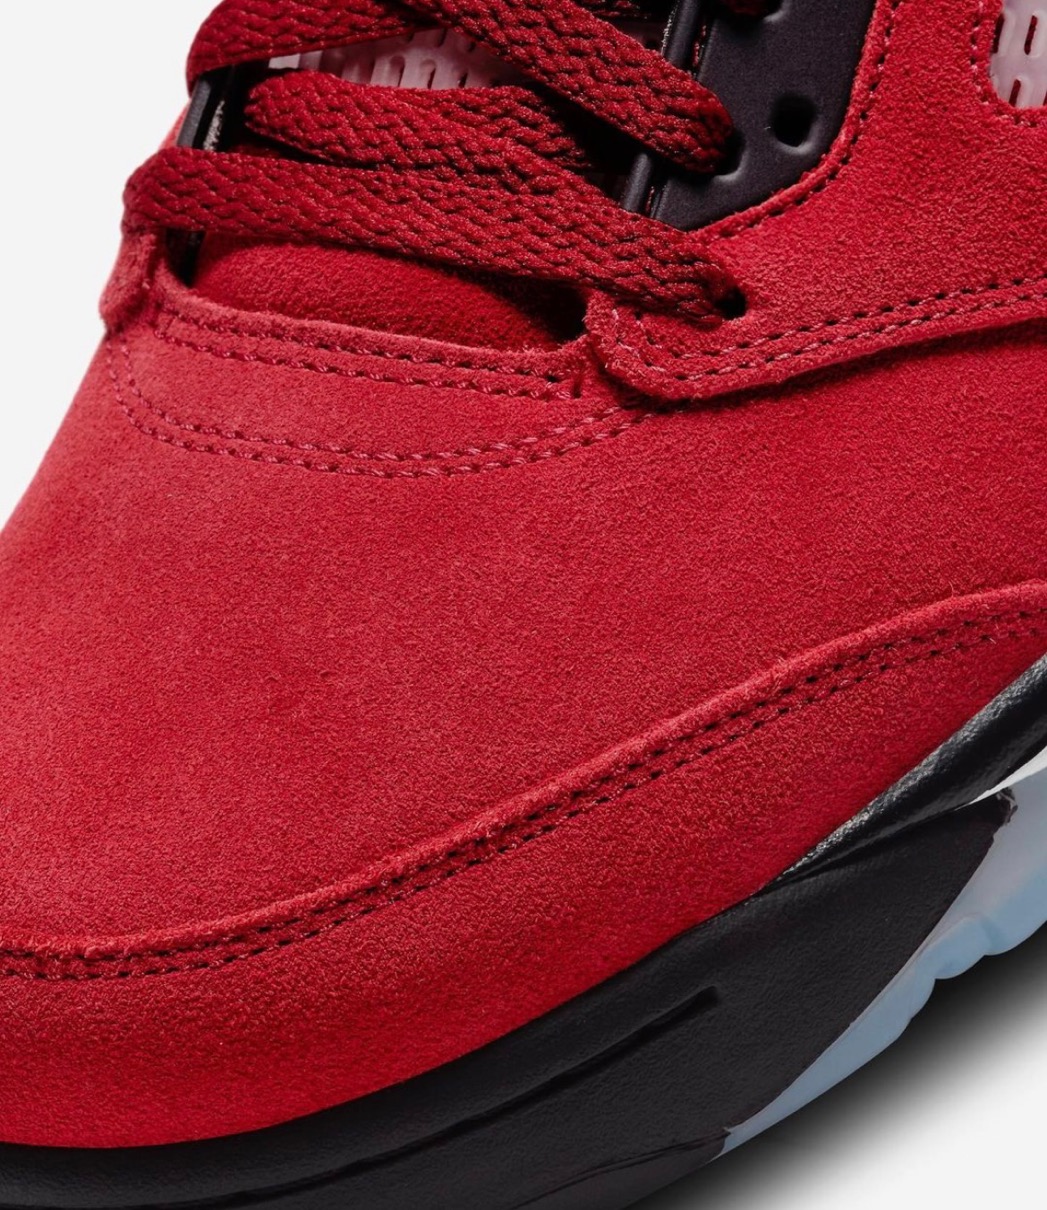 Nike】Air Jordan 5 Retro “Raging Bull”が国内4月10日に復刻発売予定 ...